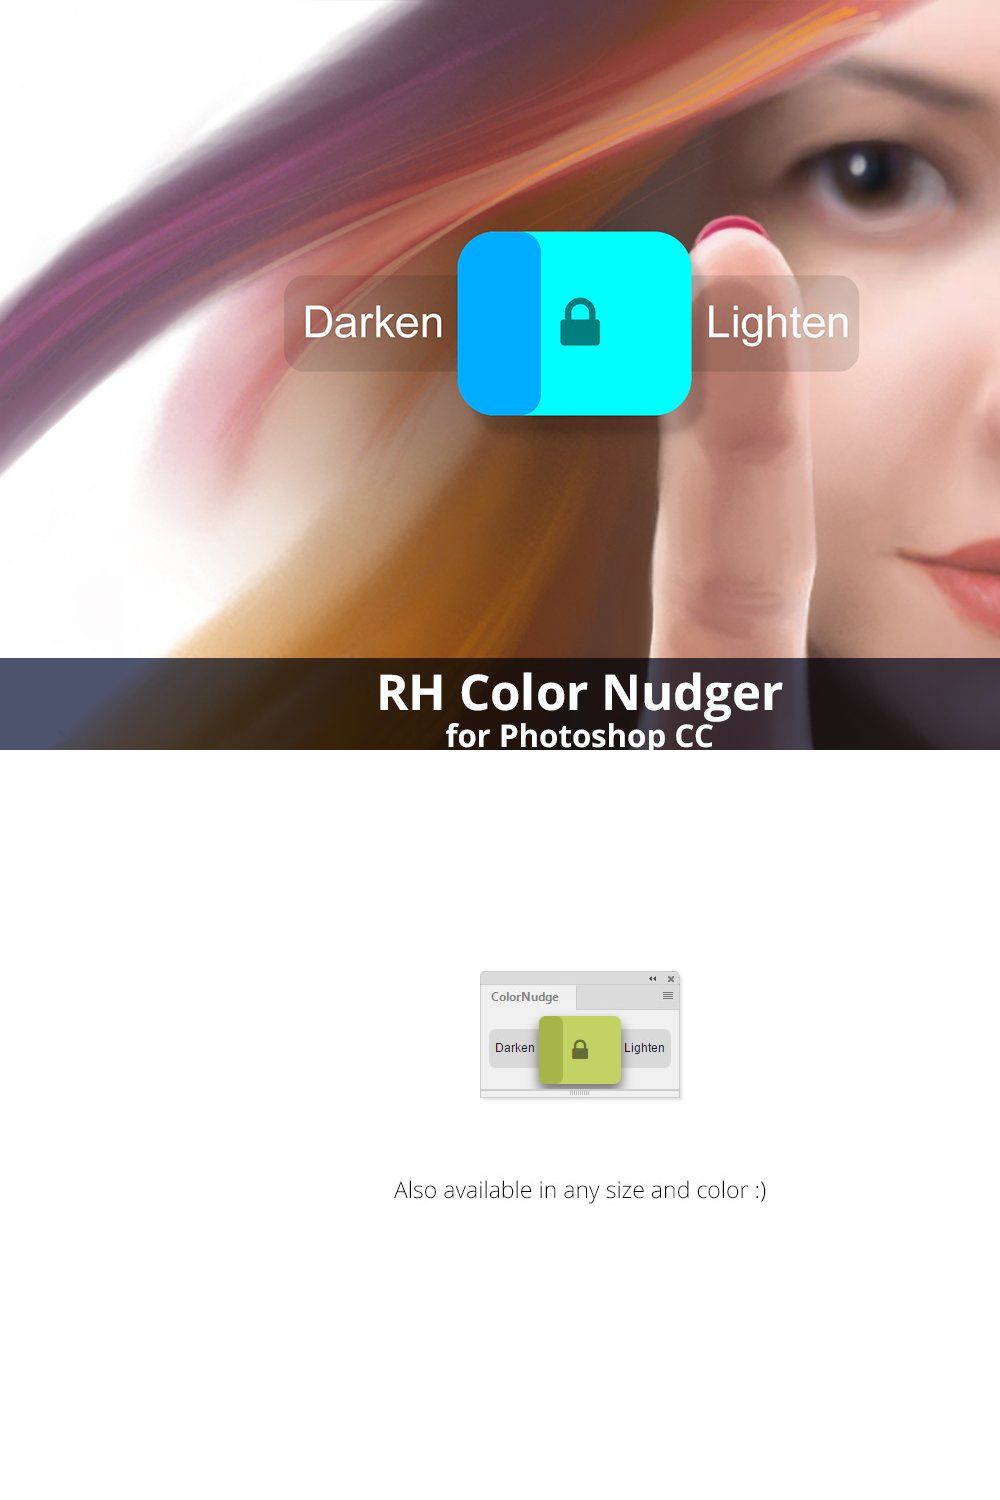 RH Color Nudger pinterest preview image.